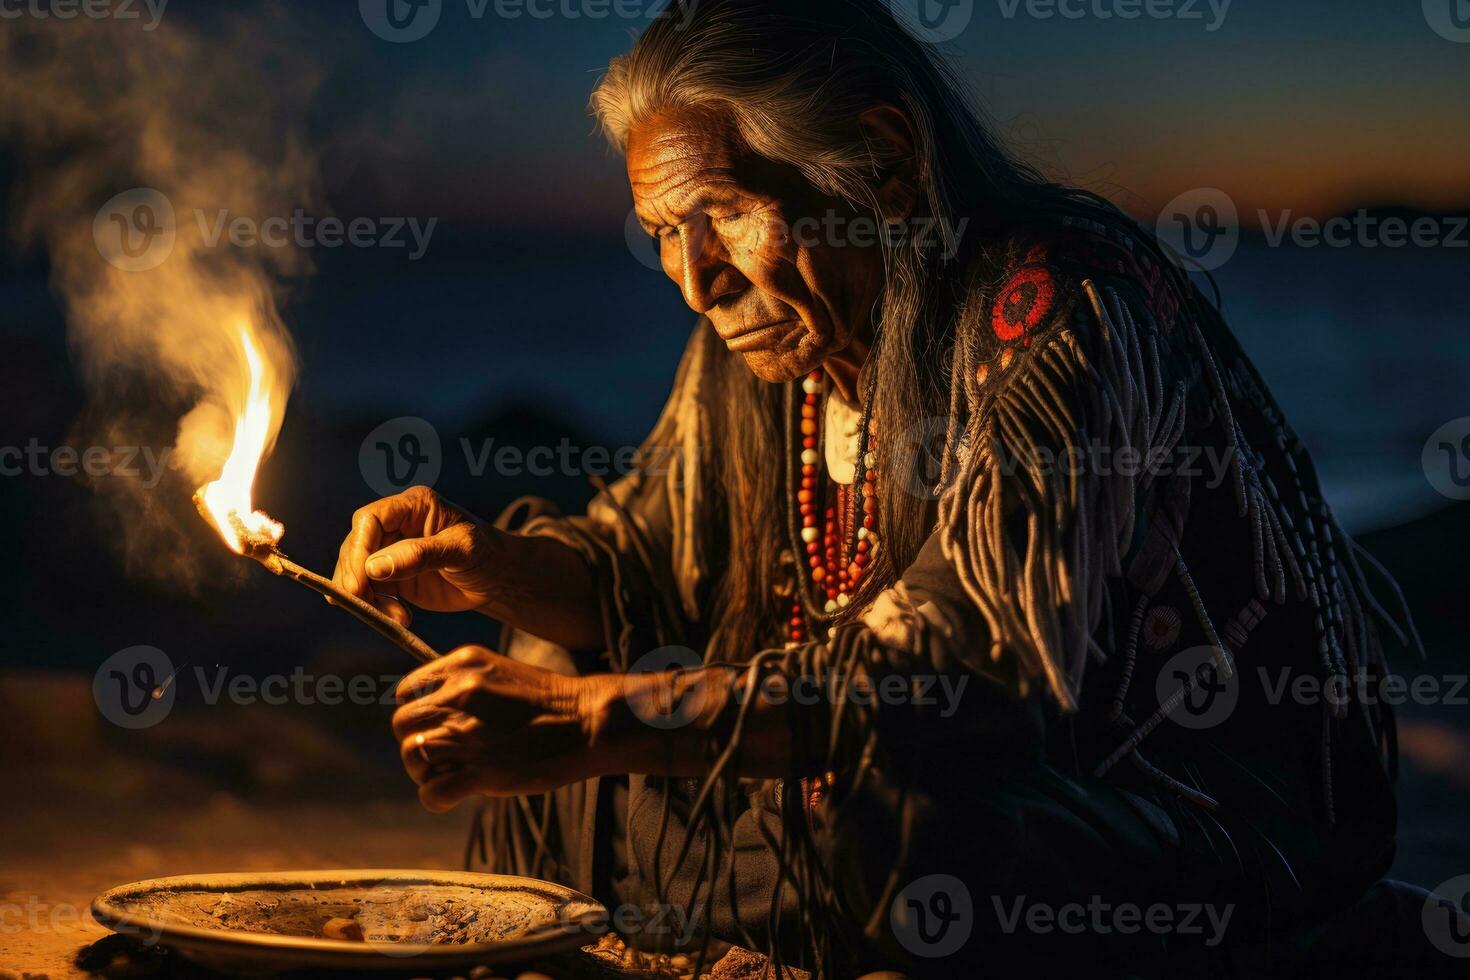 Alten einheimisch amerikanisch spielen heilig Trommel im traditionell Zeremonie unter Mondlicht foto